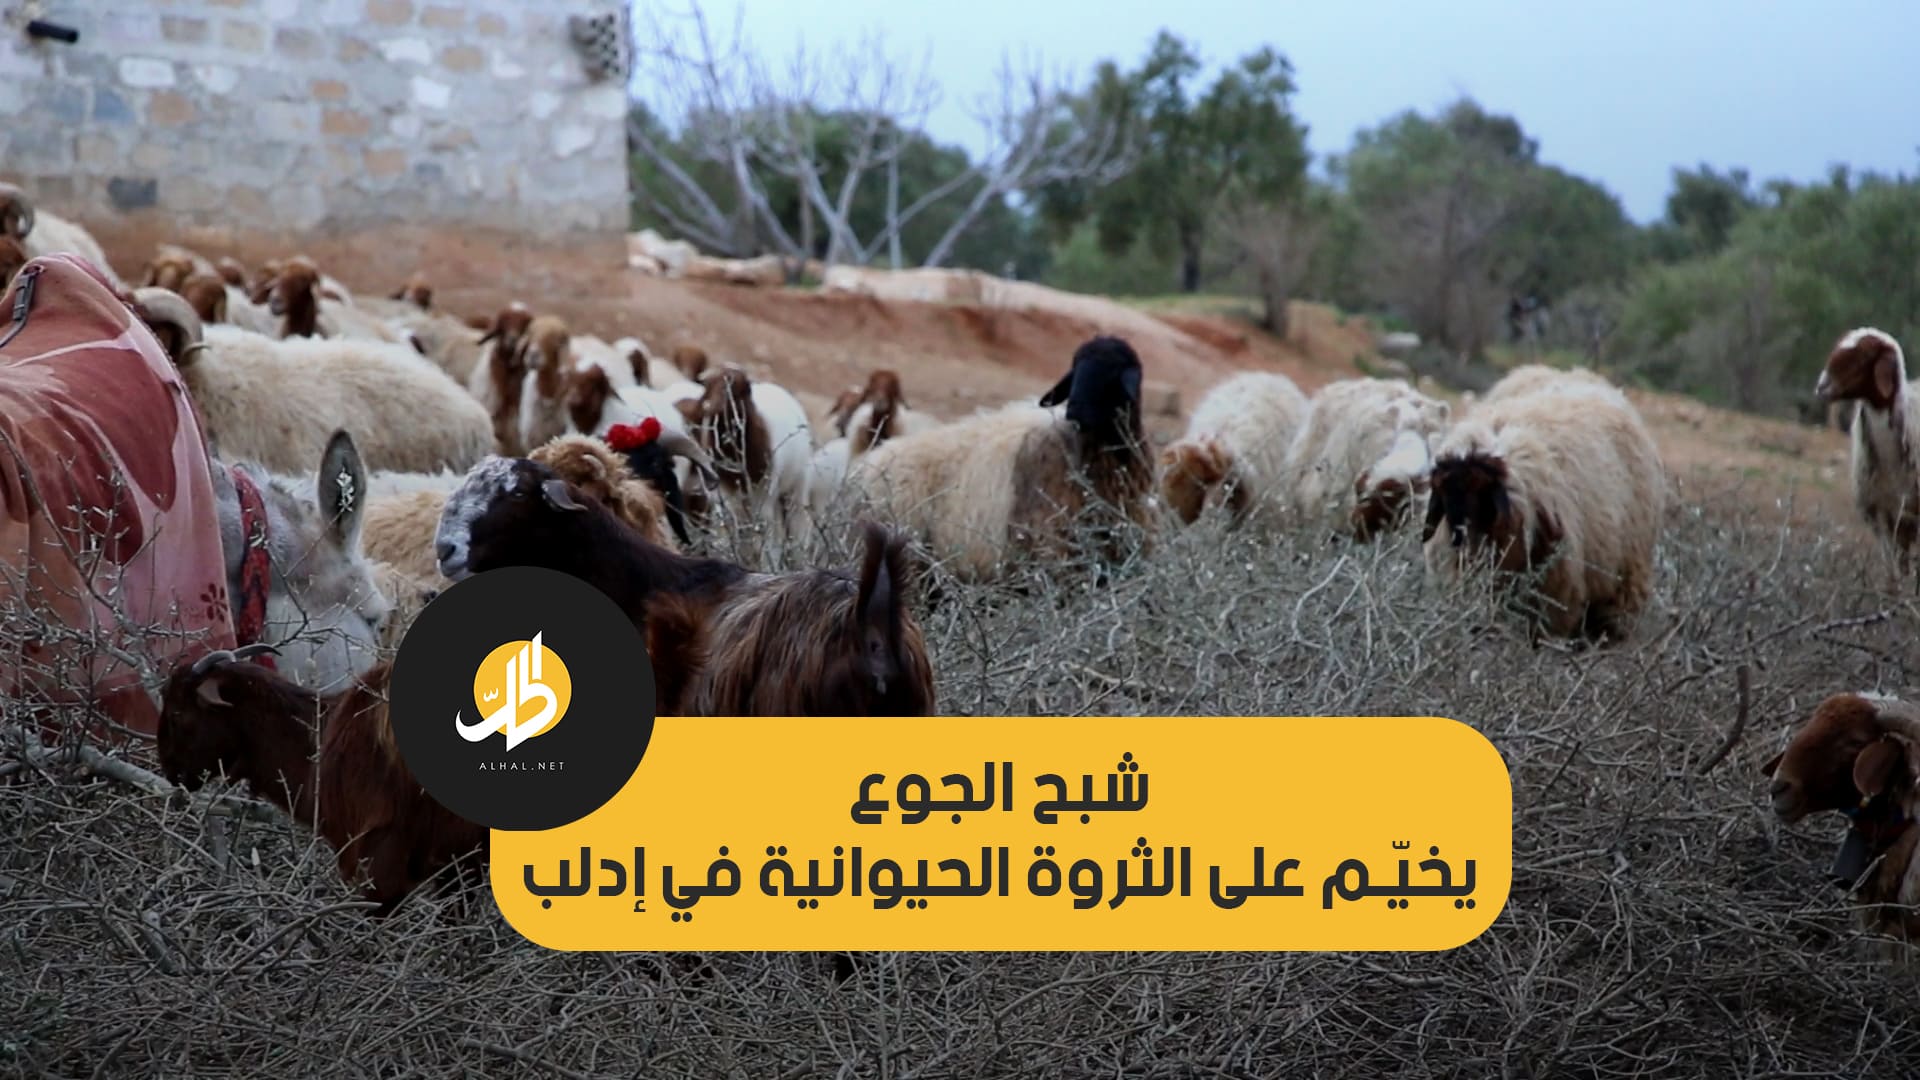 شبح الجوع يخيّم على الثروة الحيوانية في إدلب